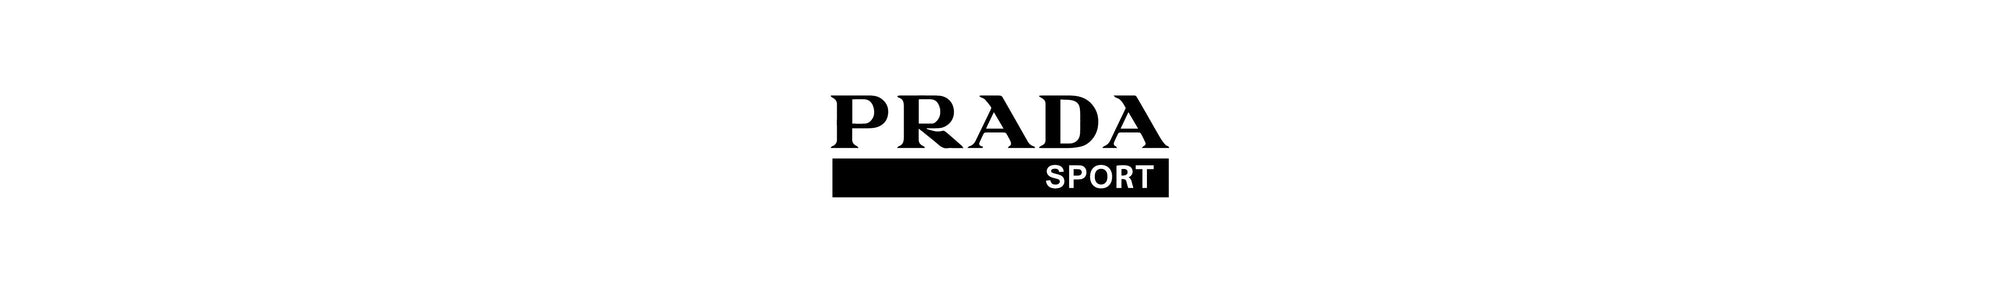 prada sport logo